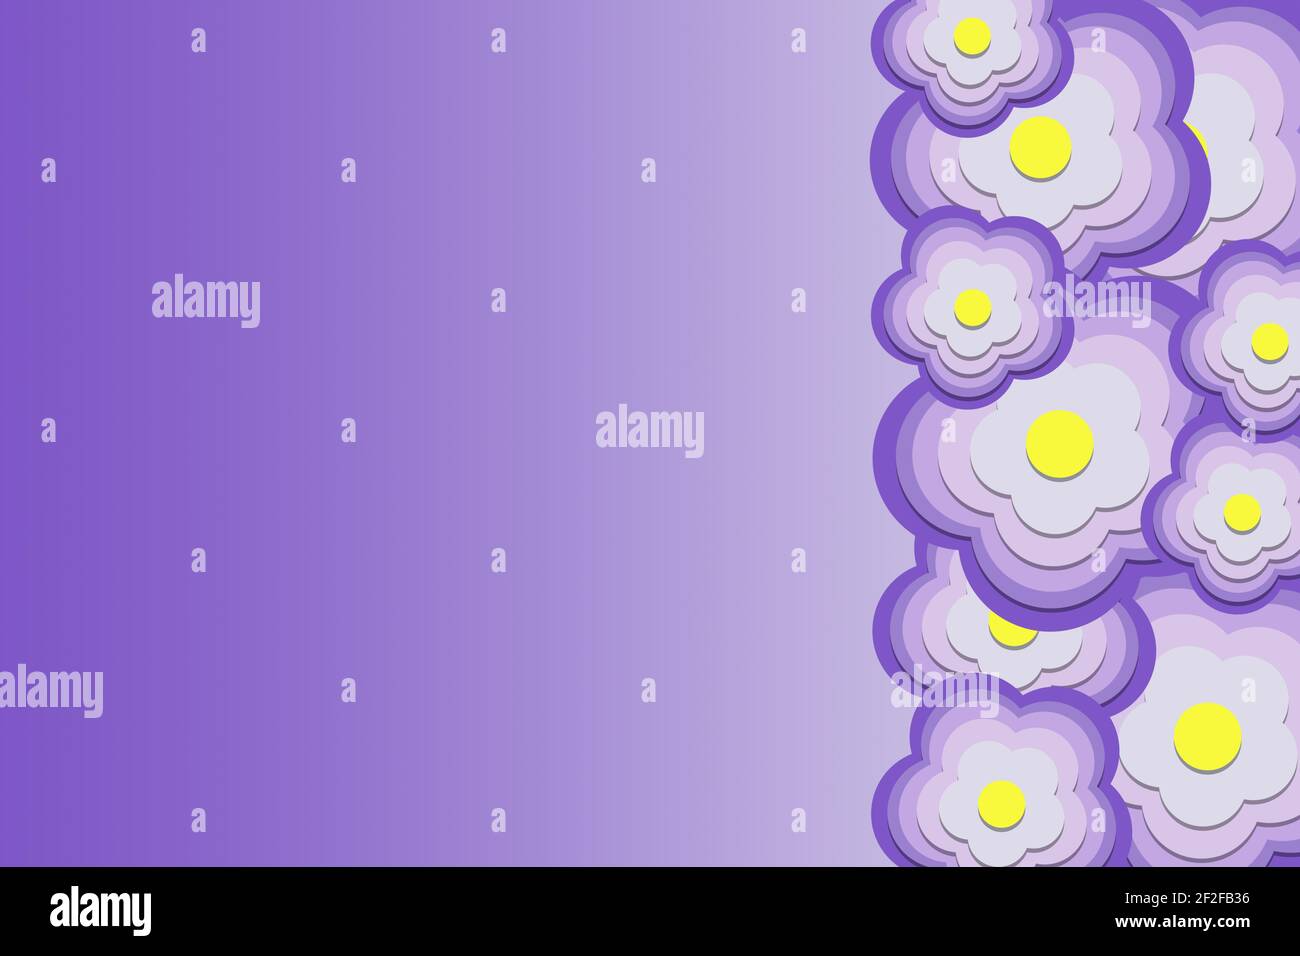 illustration en arrière-plan 3d des formes stylisées de fleurs violettes sur un fond violet dégradé avec espace pour le texte Banque D'Images